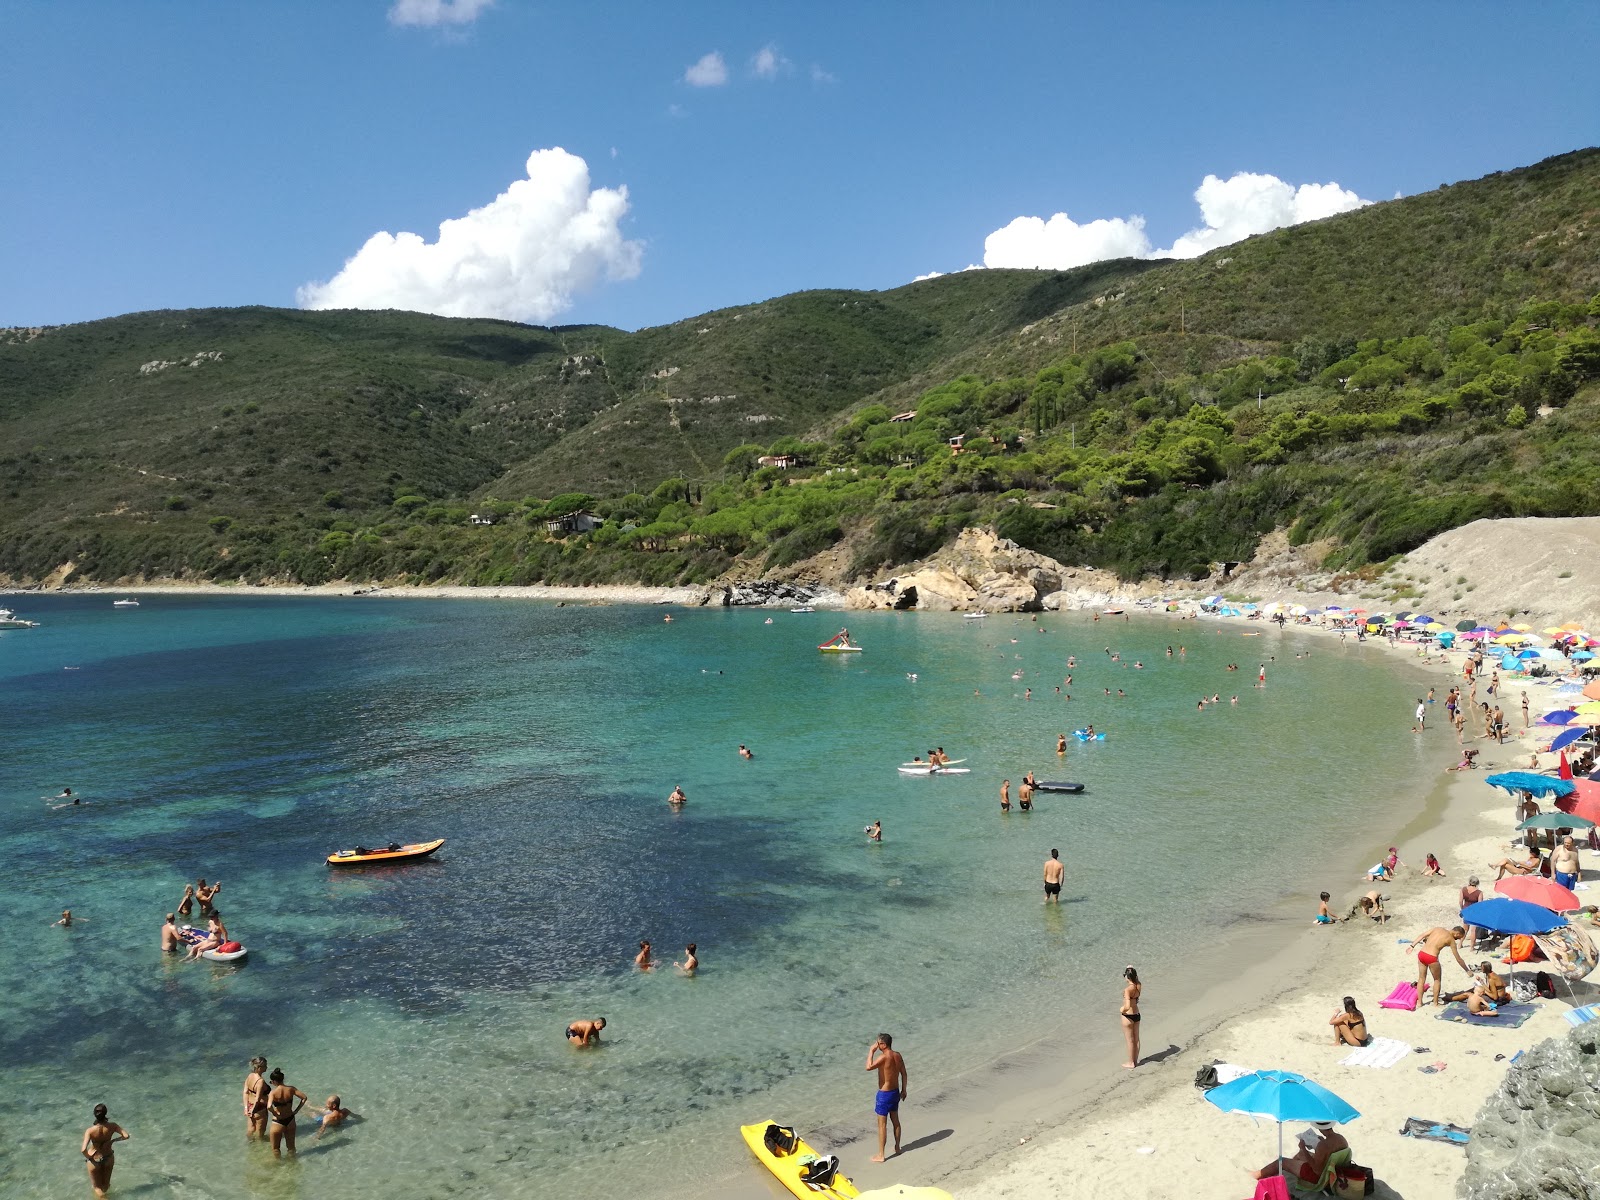 Spiaggia Di Laconella'in fotoğrafı parlak kum yüzey ile